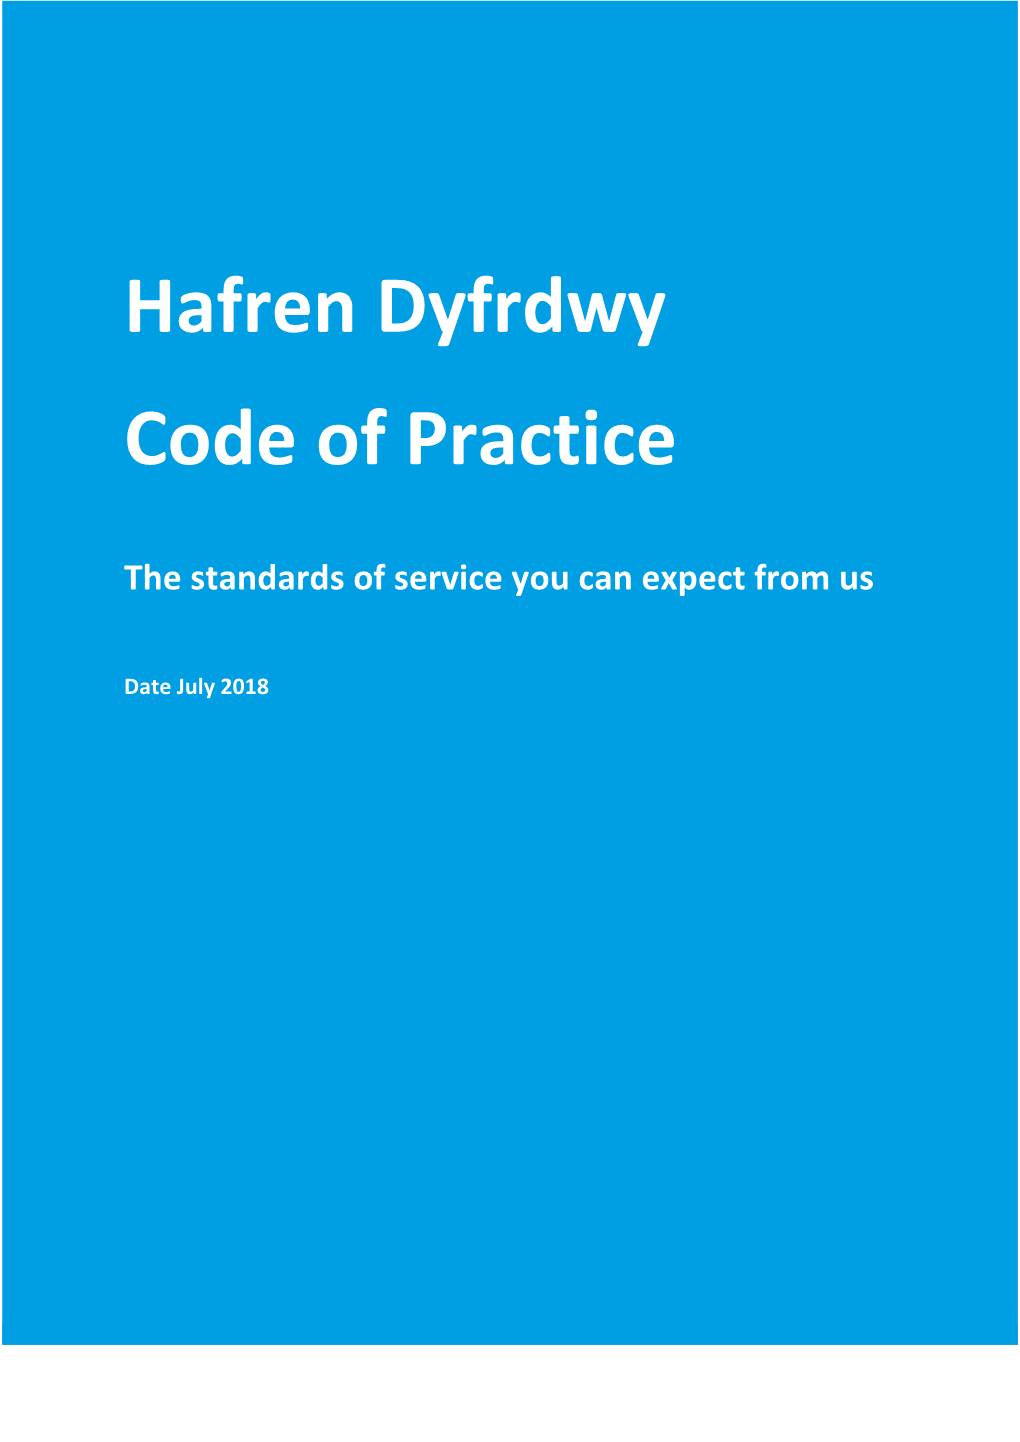 Hafren Dyfrdwy Code of Practice